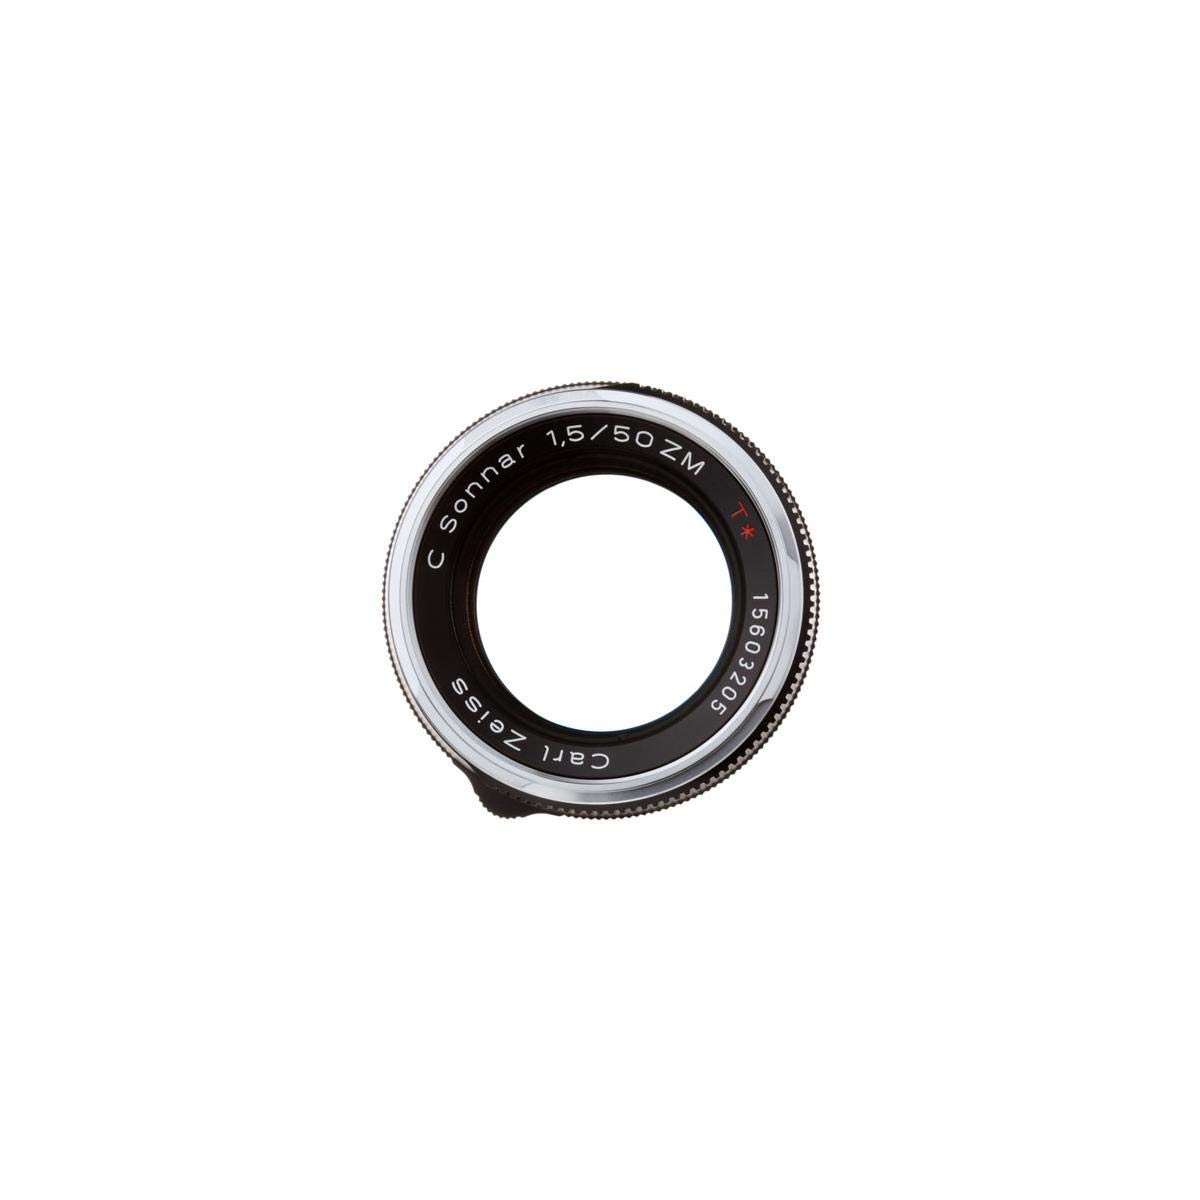 ZEISS Ikon C Sonnar T* ZM 1.5/50 Standard Camera Lens for Leica M-Mount Rangefinder Cameras, Black